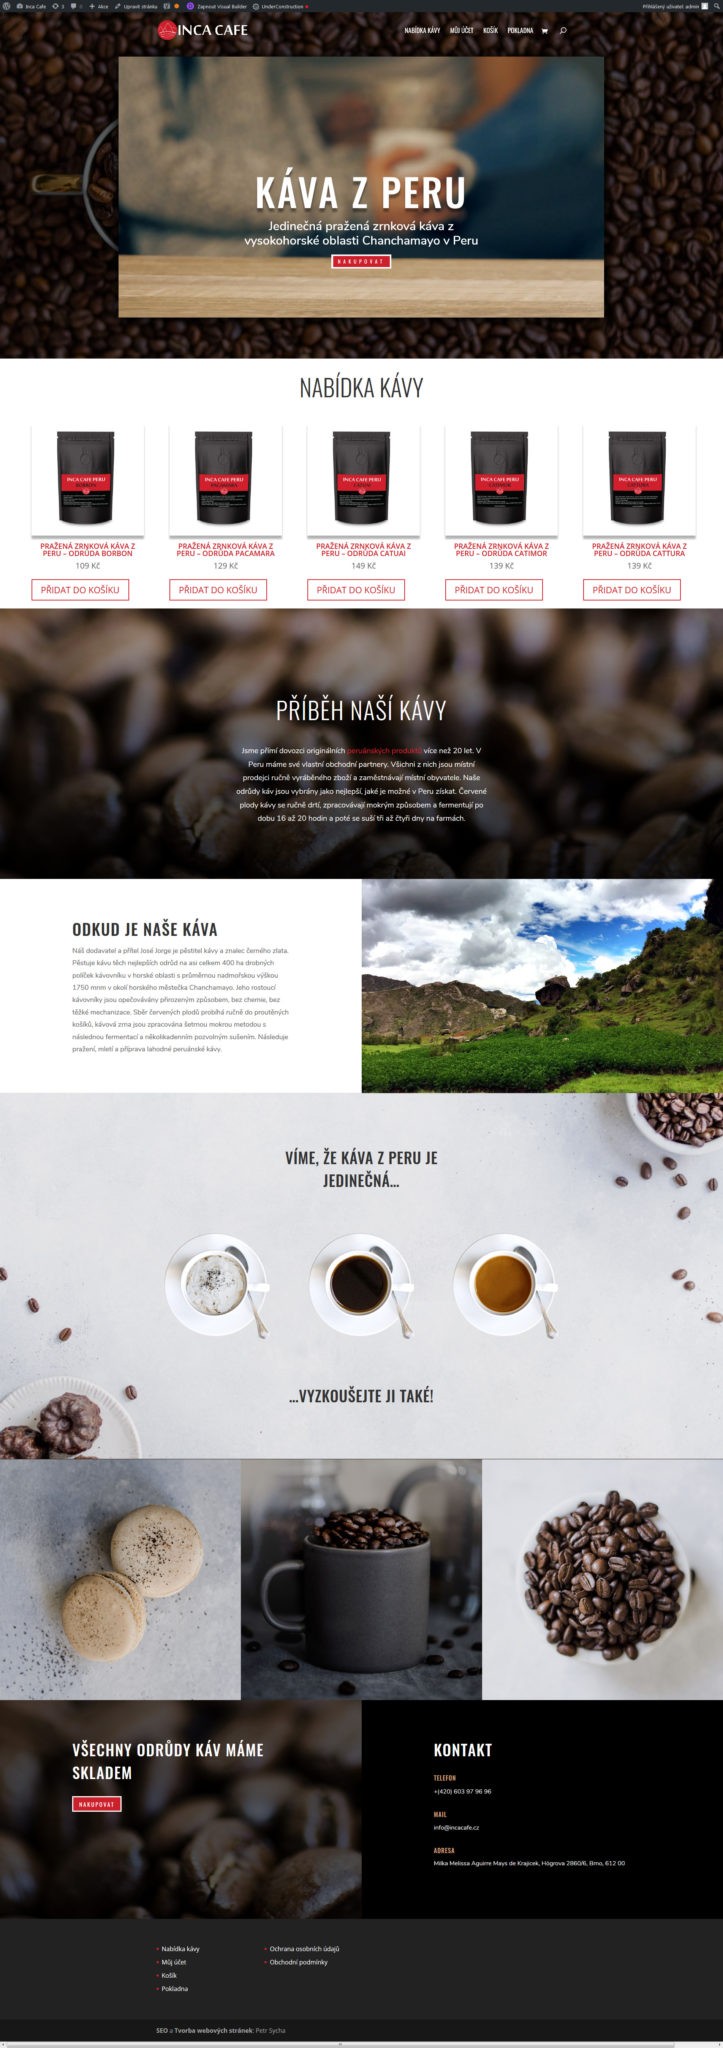 Káva z Peru těch nejlepších odrůd a vynikající kvality - Inca Cafe